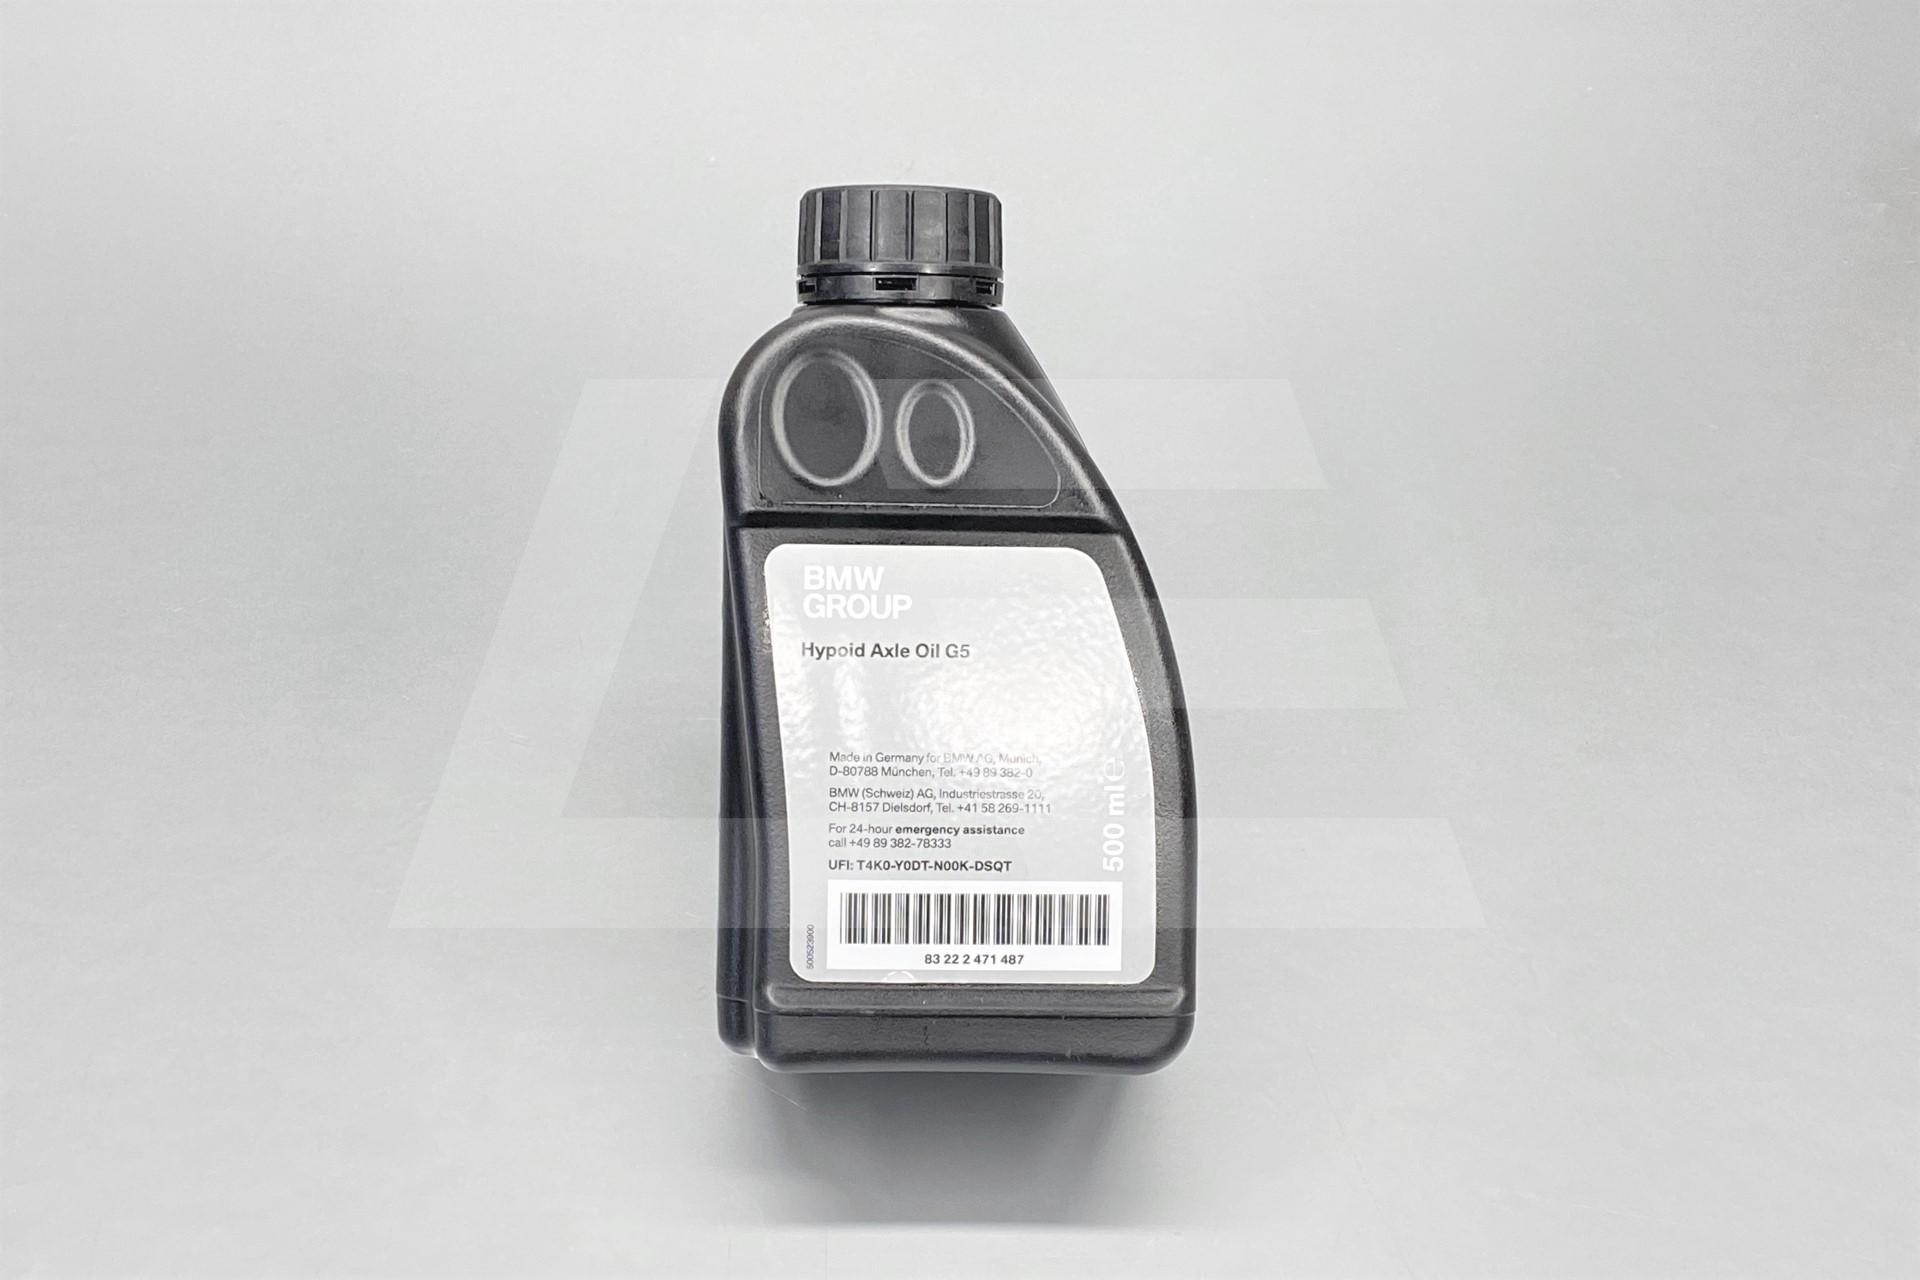 Трансмиссионное масло бмв. Hypoid Axle Oil g4 для BMW 500ml. BMW 83222471487. Hcf2 трансмиссионное масло.